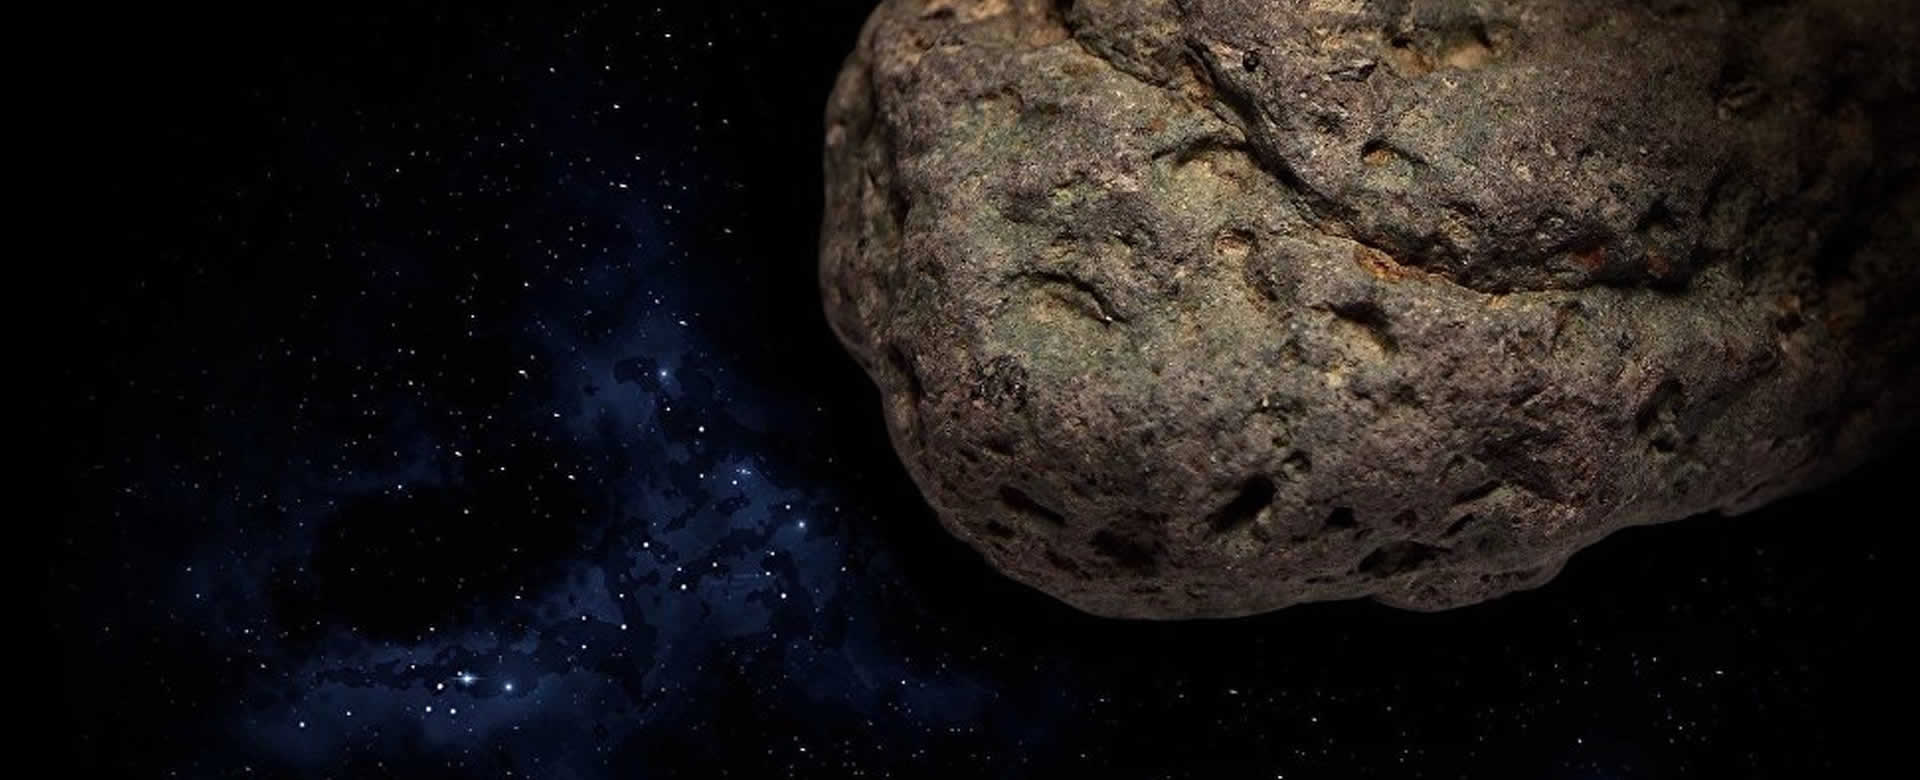 Los astrónomo se percataron tarde del enorme asteroide que rozó la tierra